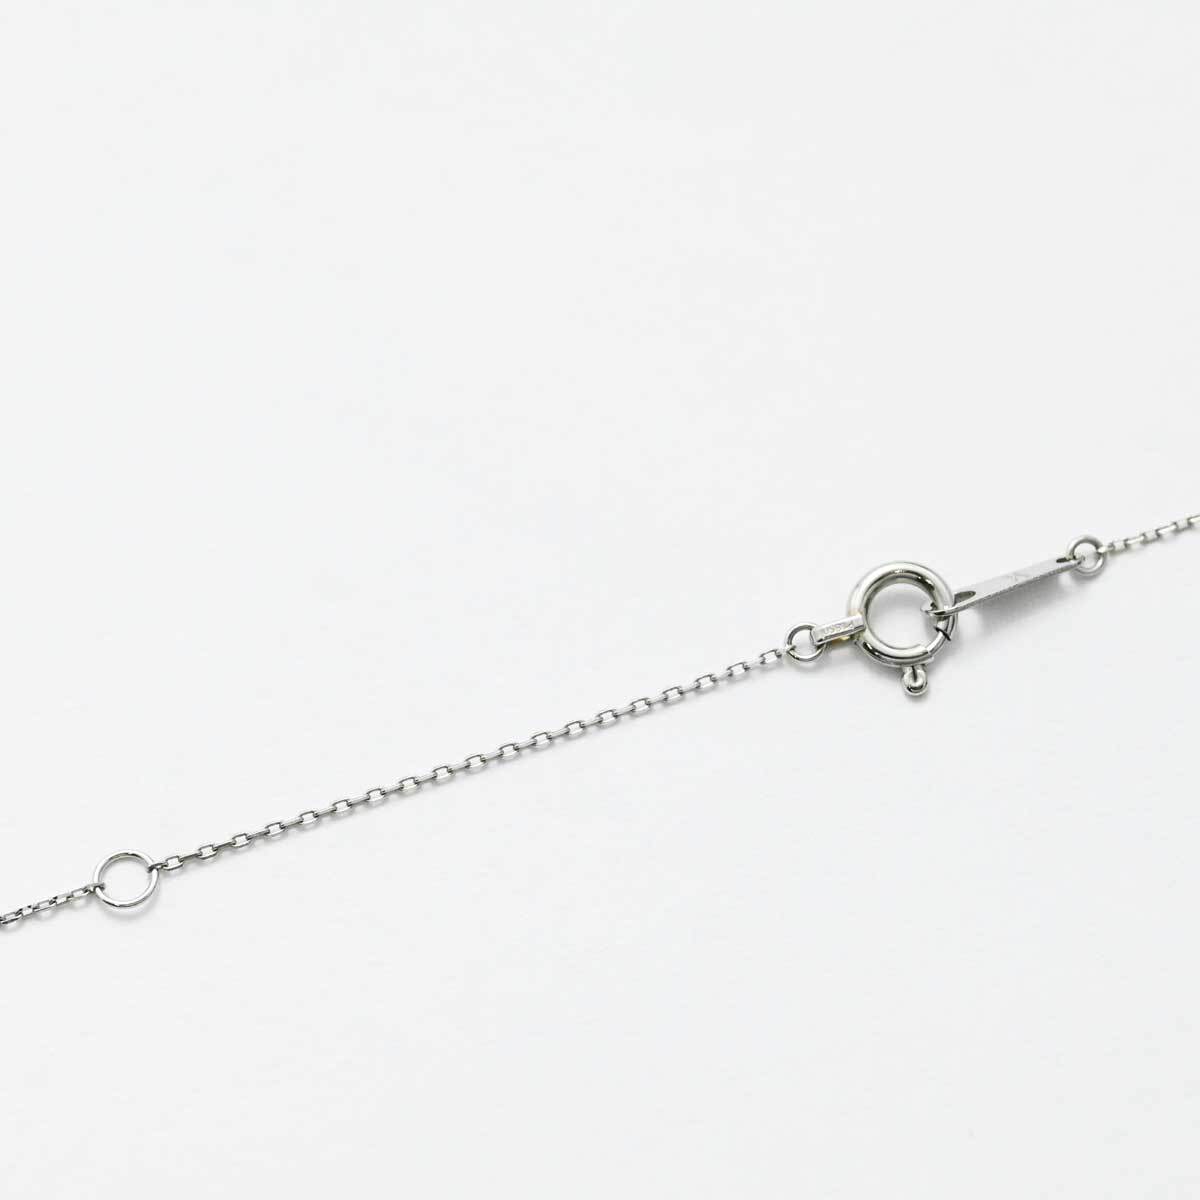  Vendome PT950 PT850 platinum diamond necklace 3440